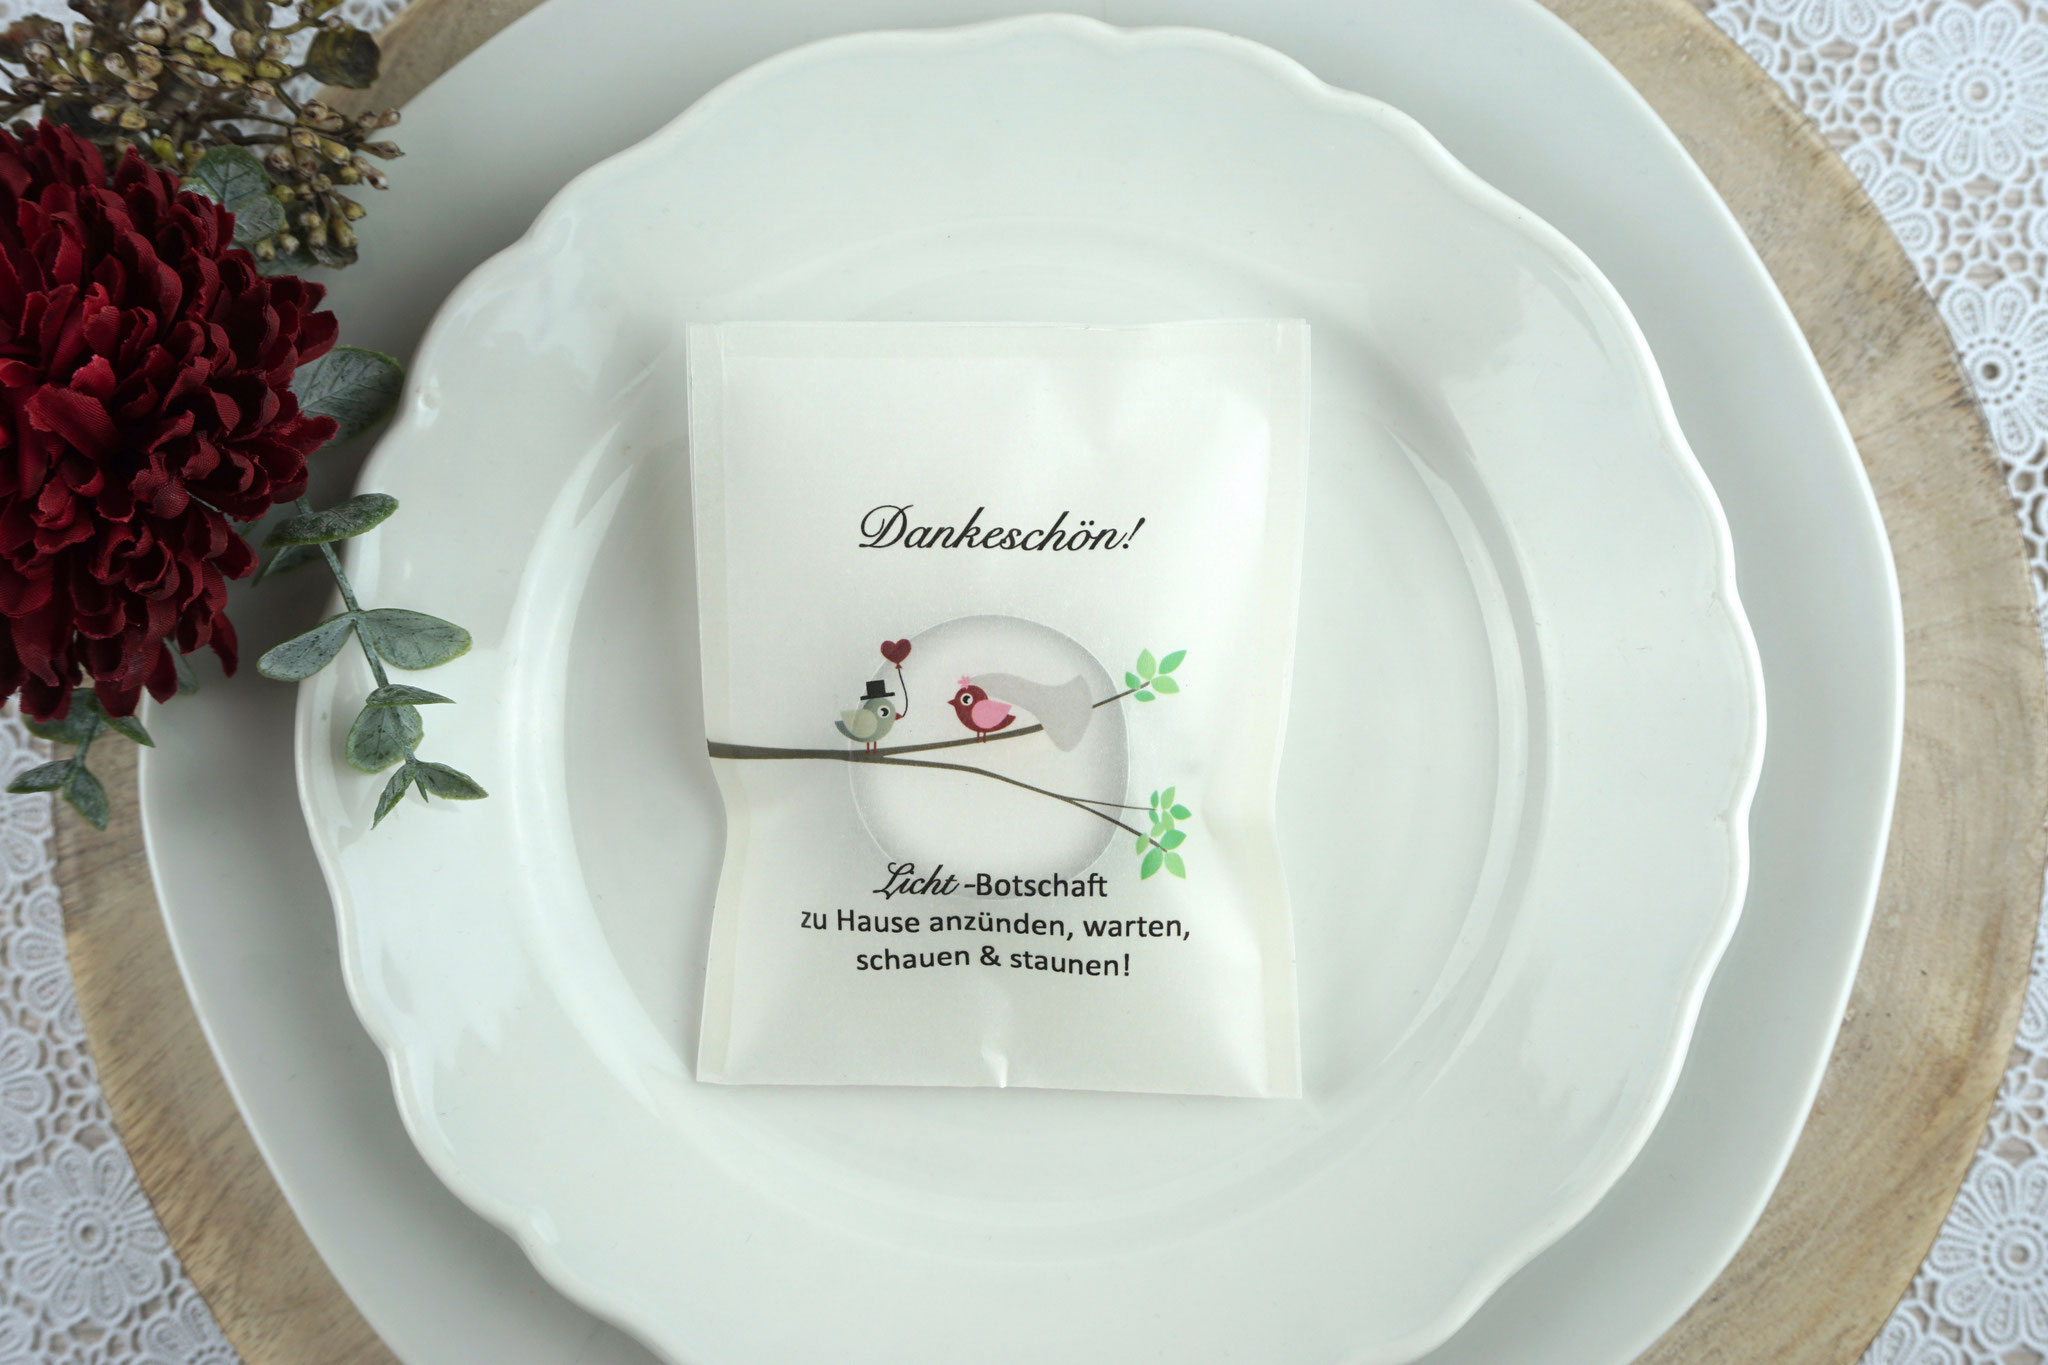 Licht-Botschaft Design "Hochzeitsvögel auf verzweigtem Ast", Farbe Bordeaux